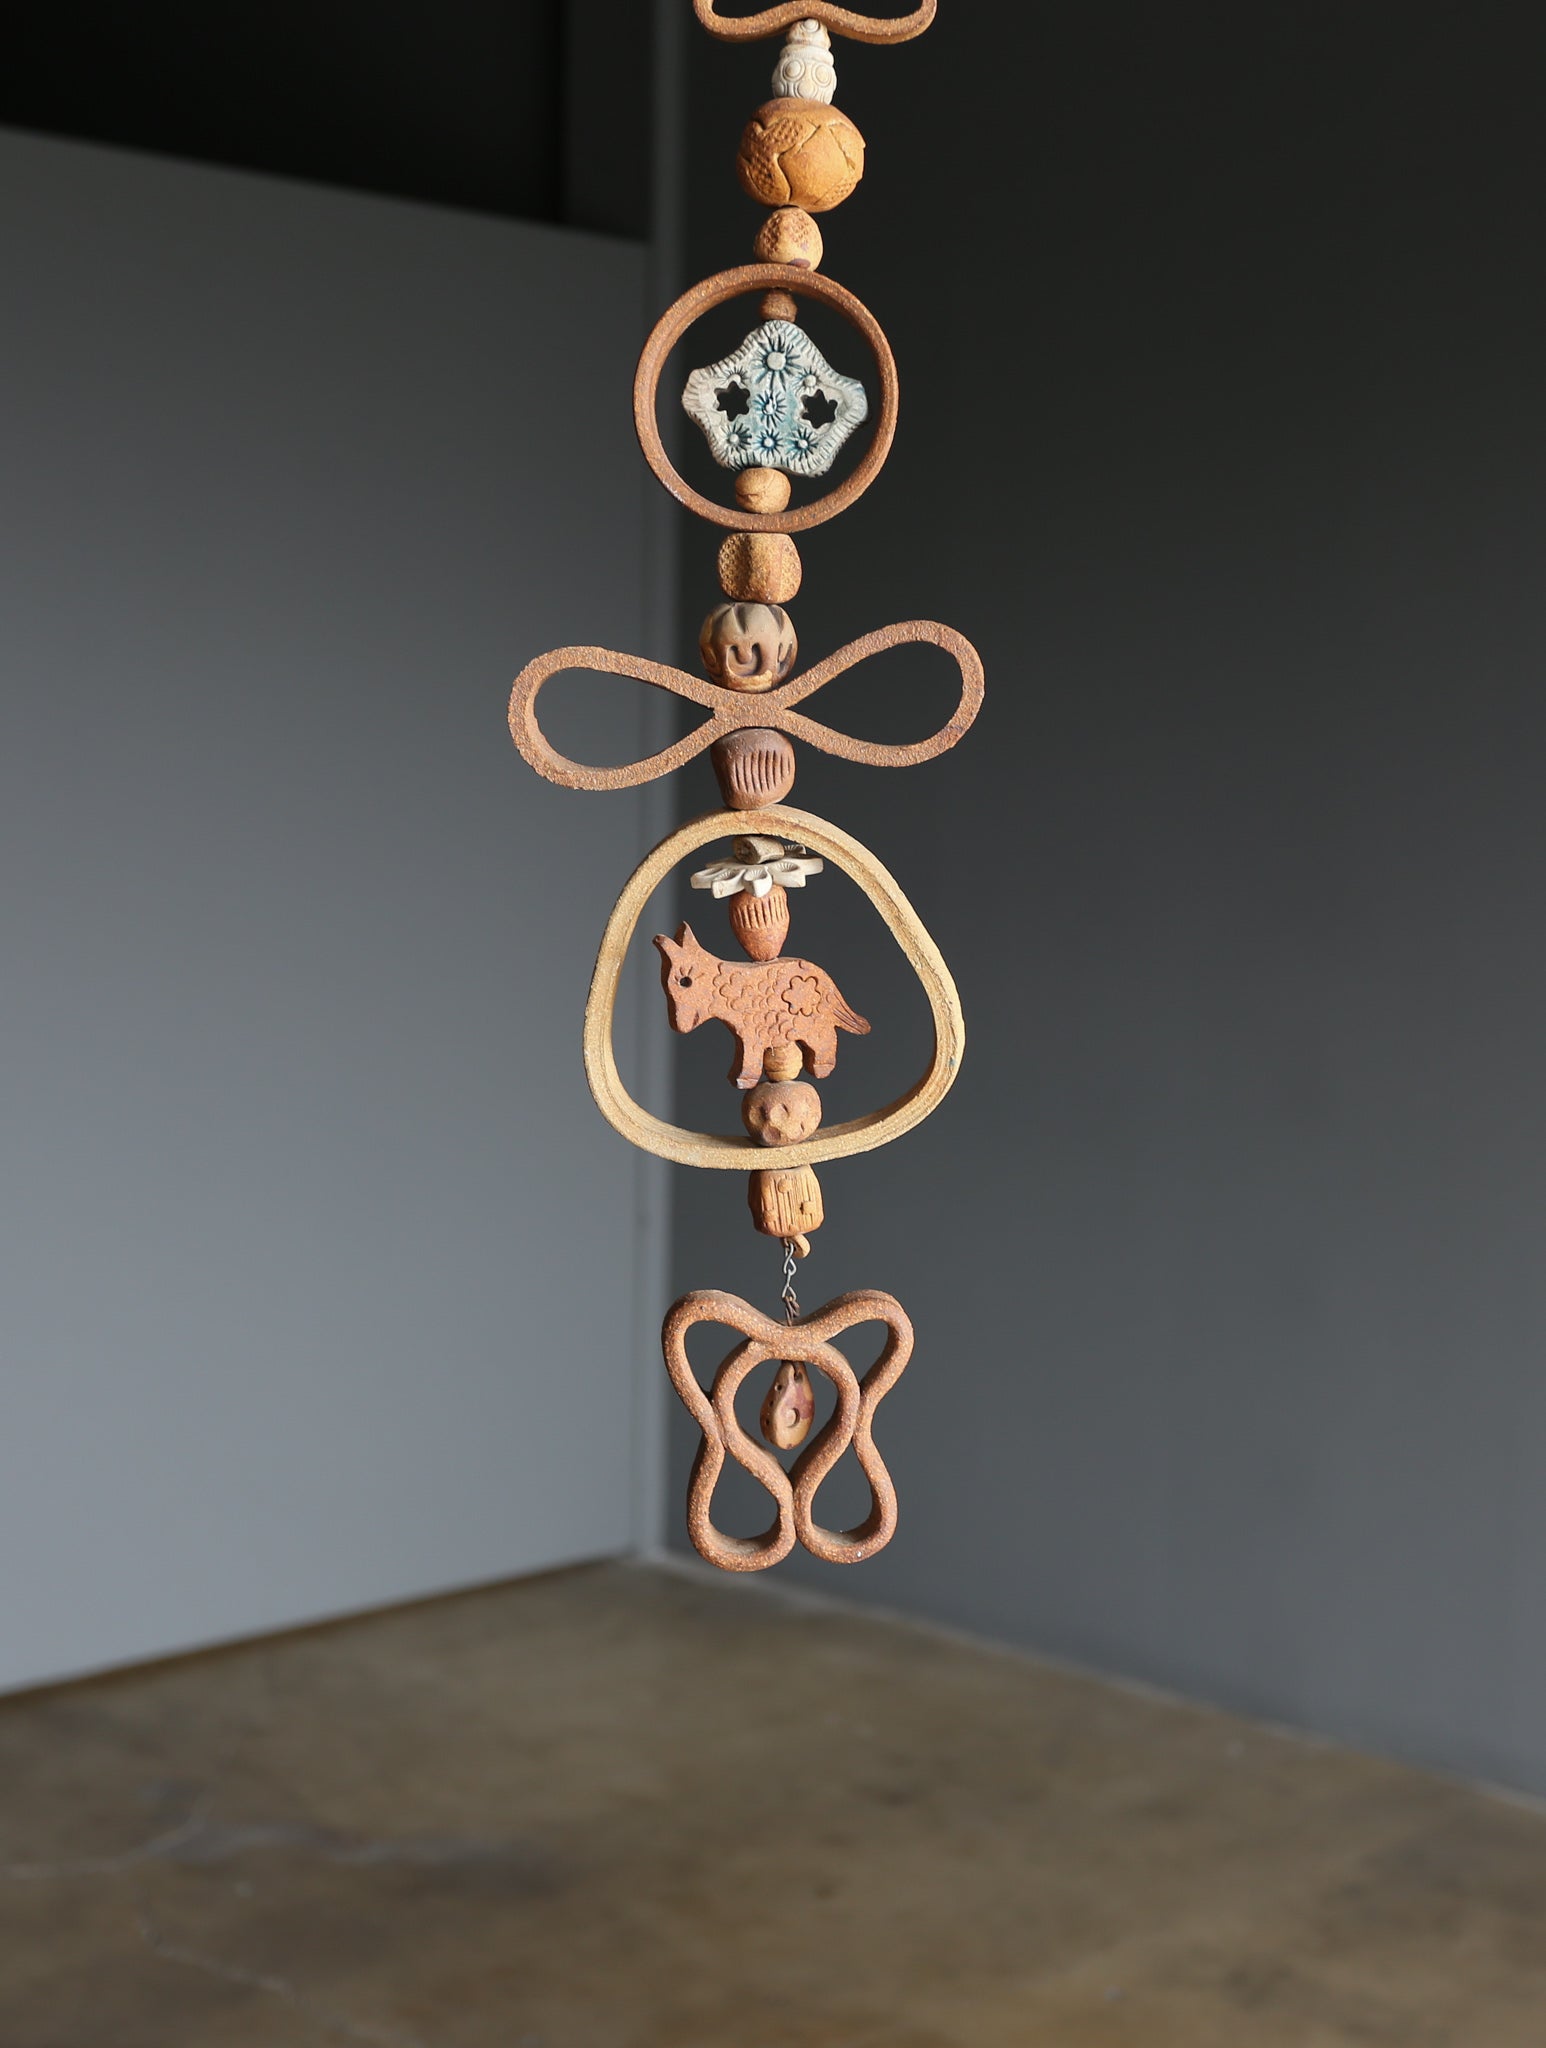 =SOLD= Ted Saito Hanging Ceramic Sculpture, circa 1970